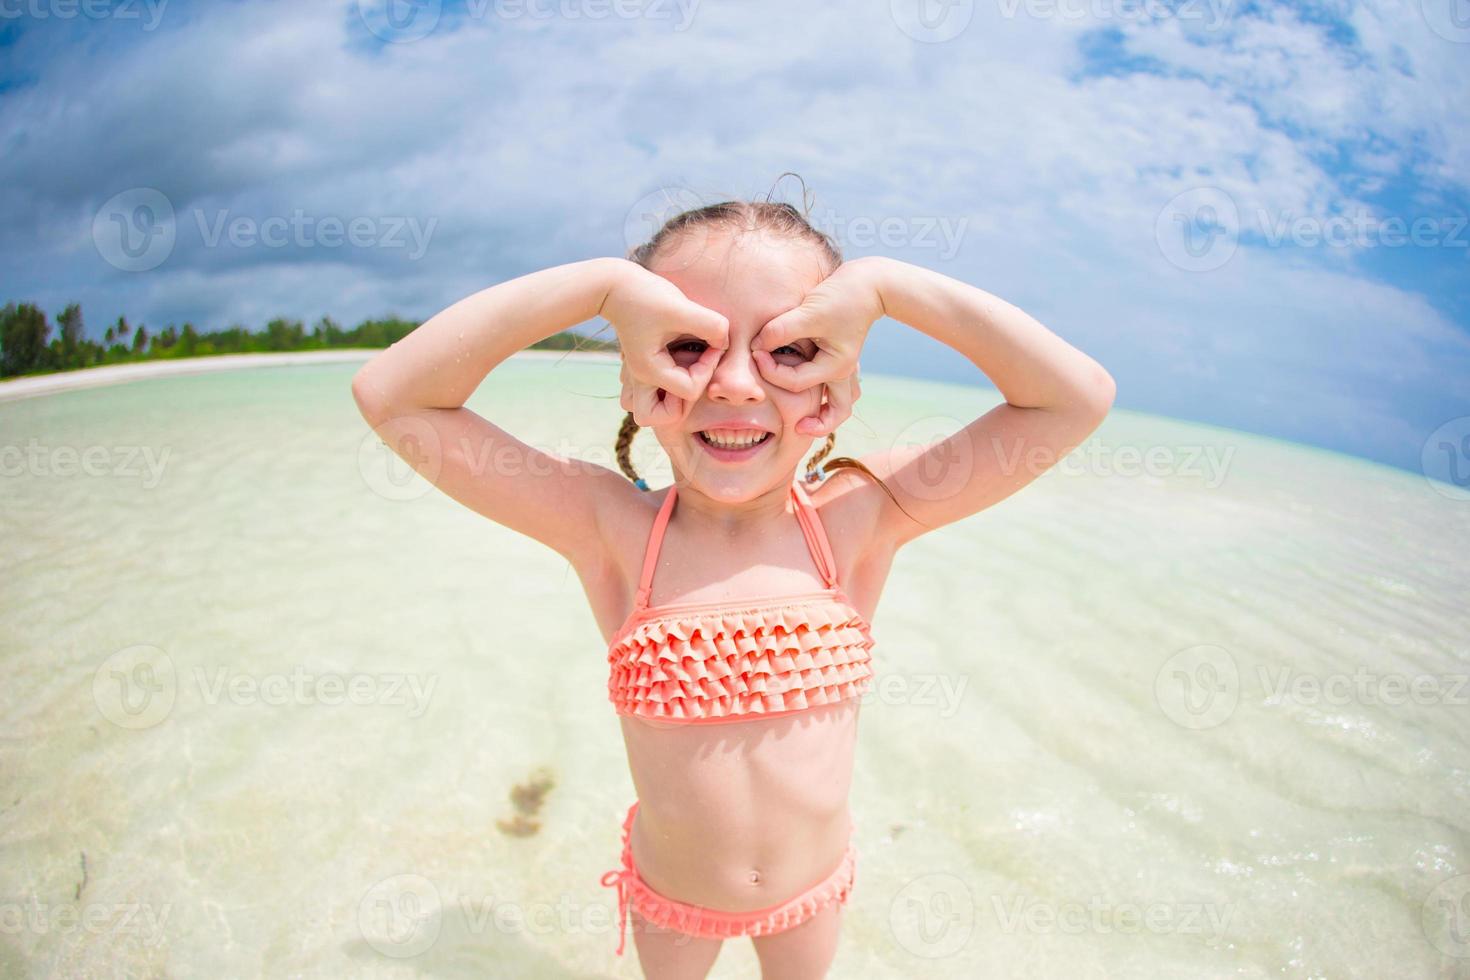 adorable niñita divirtiéndose como un superhéroe en la playa durante las vacaciones de verano foto